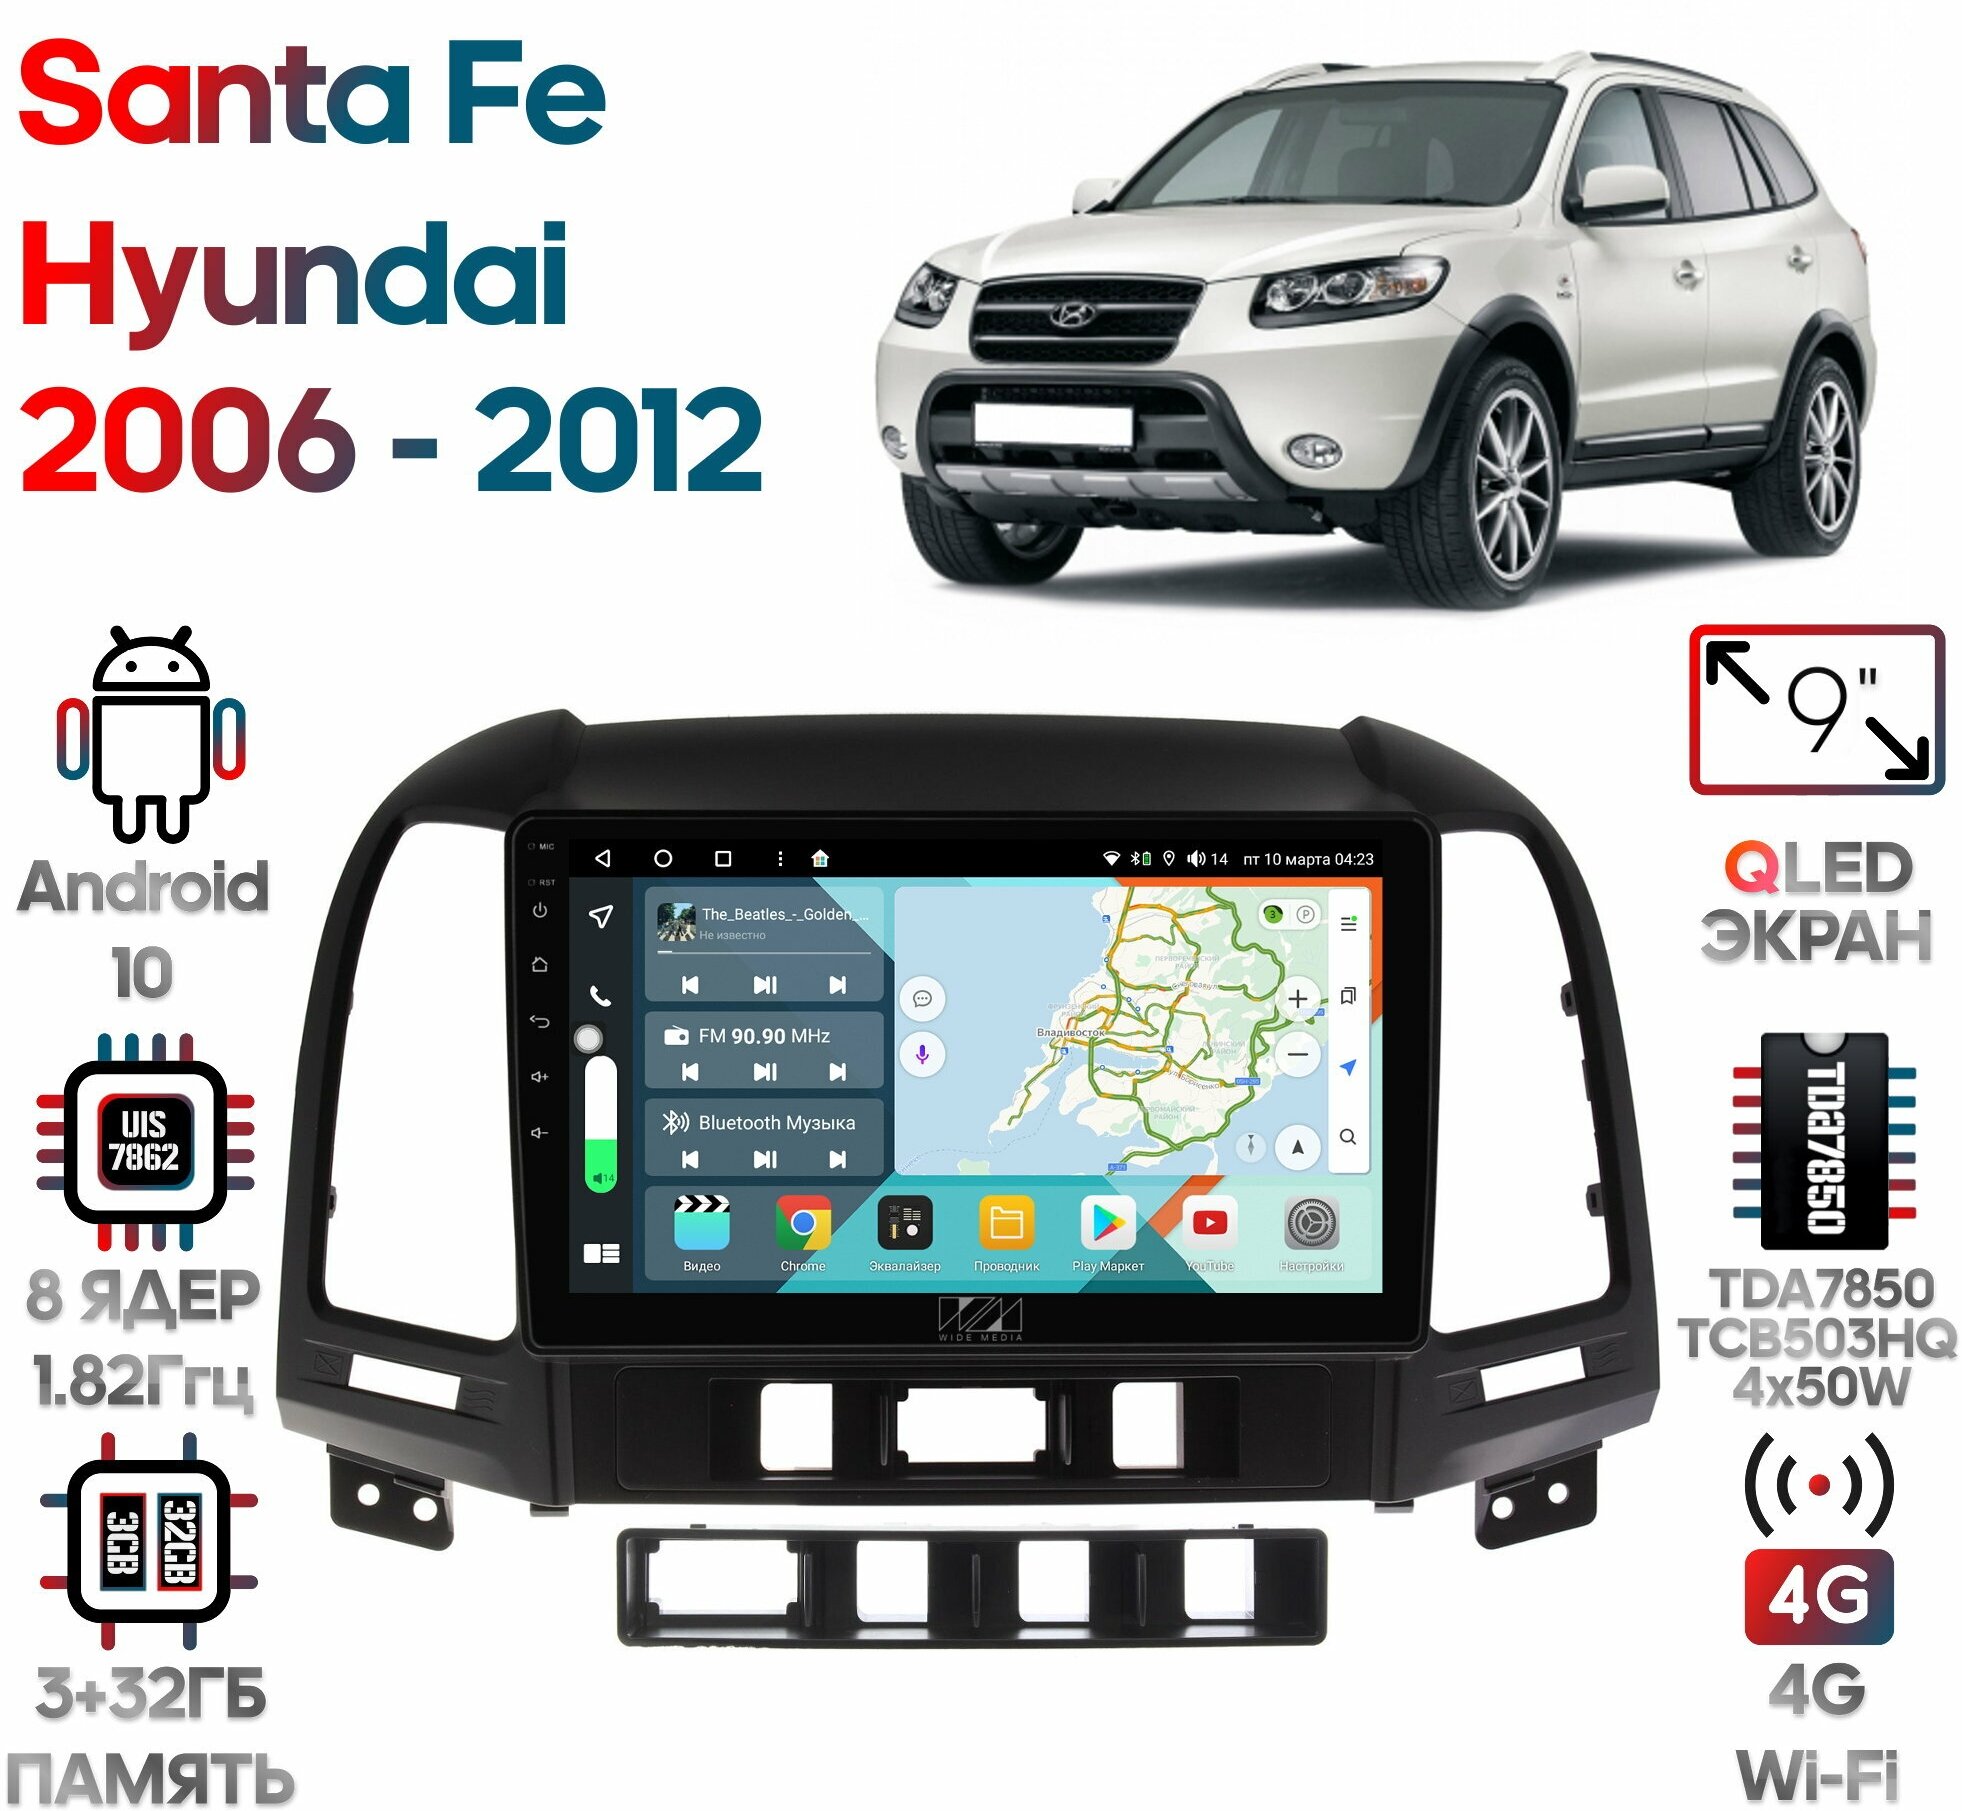 Штатная магнитола Wide Media Hyundai Santa Fe 2006 - 2012 [Android 10, 9 дюймов, 3/32GB, 8 ядер, TDA7850, DSP, SPDIF, QLED, 1280*720]